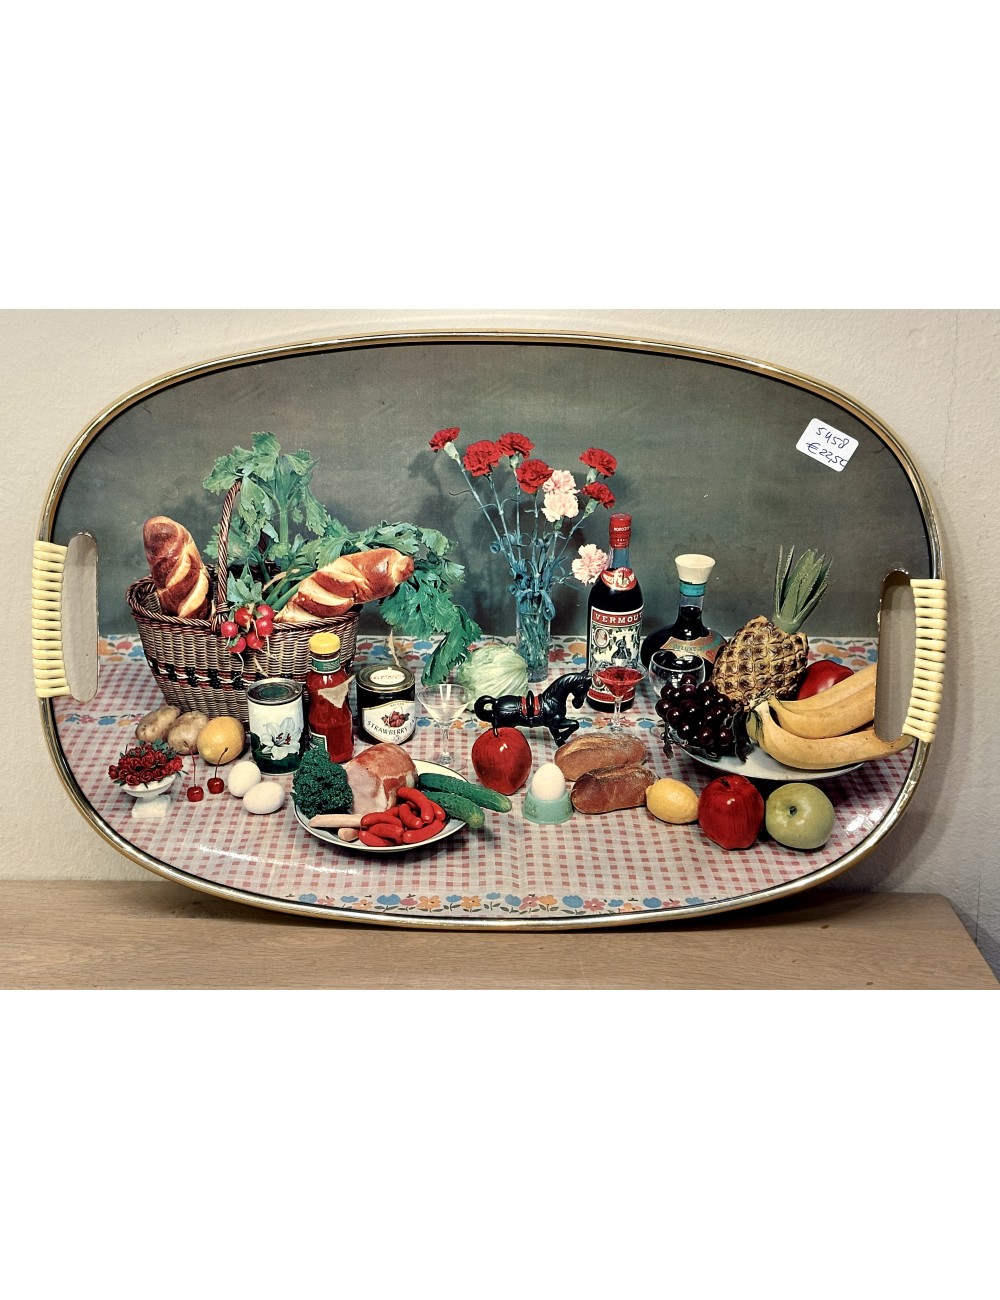 positie resterend humor Dienblad met geplastificeerde vintage décor afbeelding Vermouth, stokbrood,  fruit, vlees, groenten en anjers